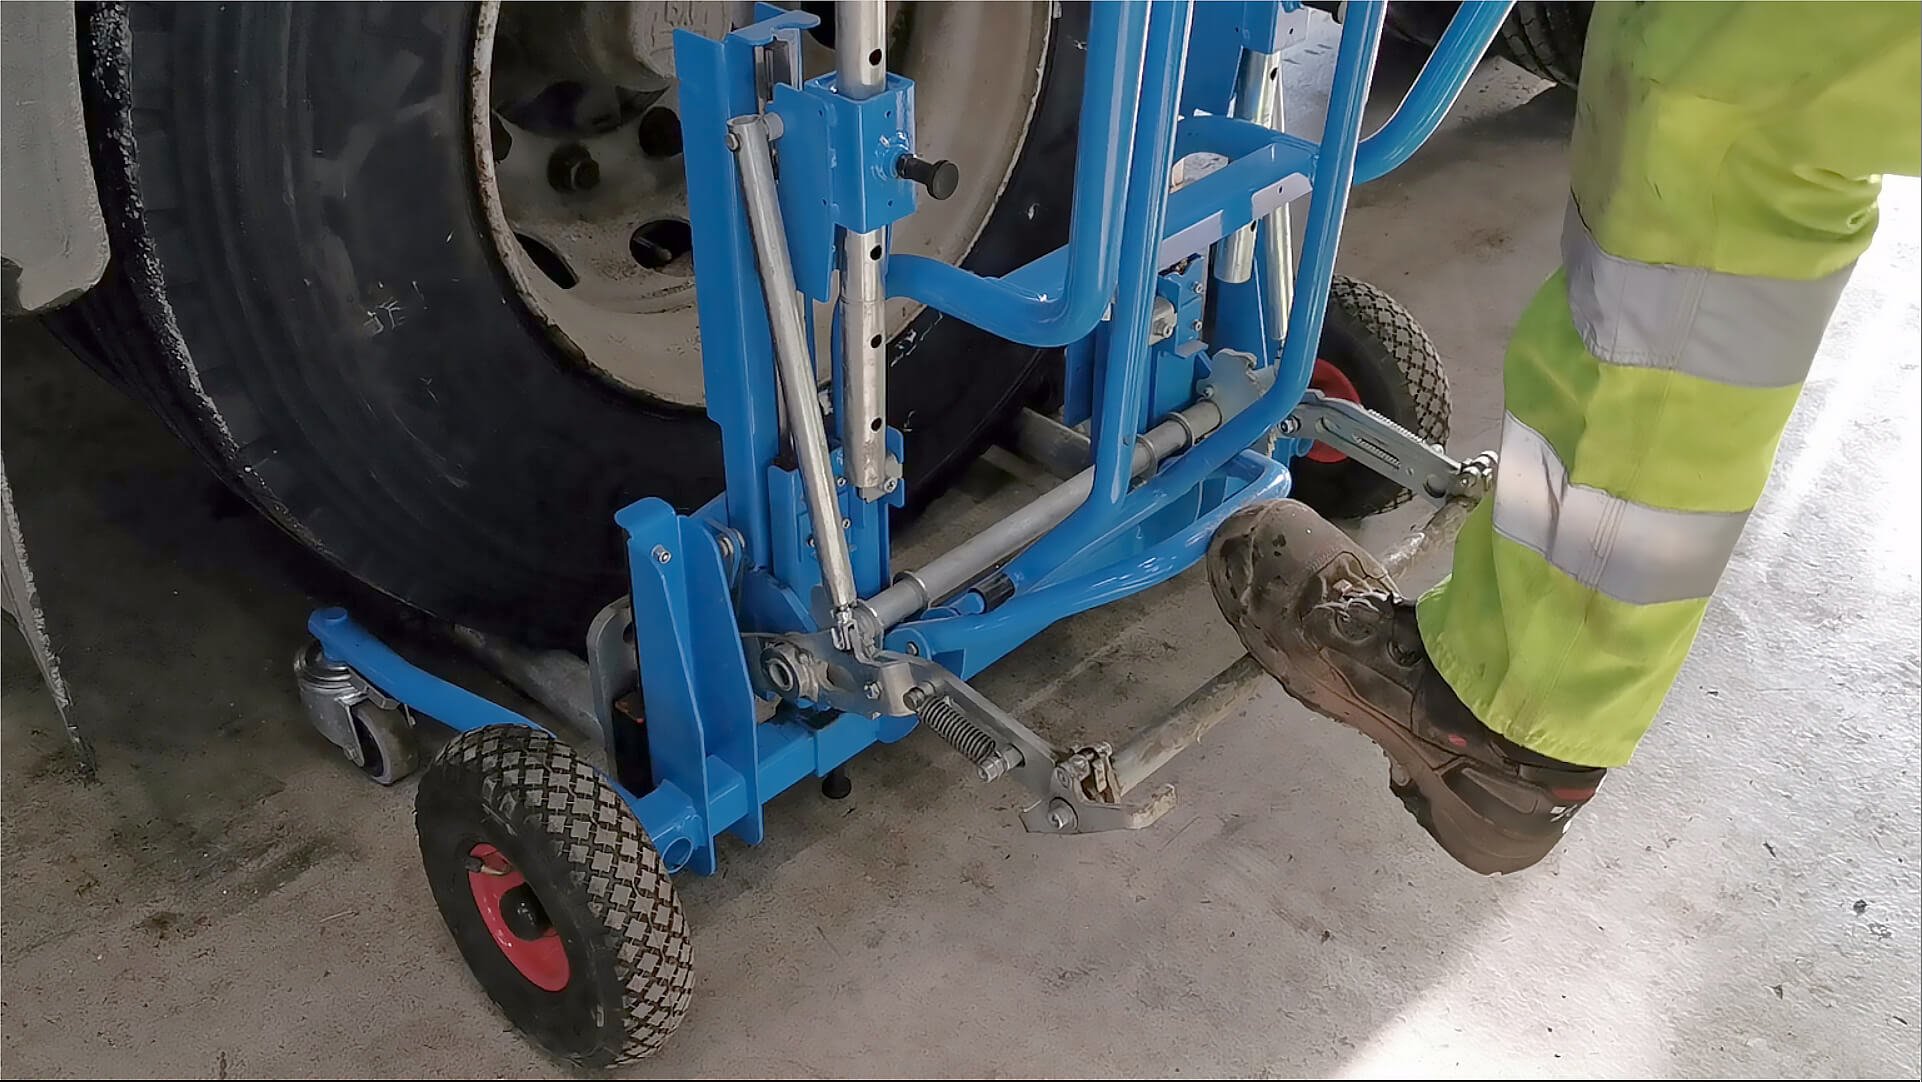 Fácil de levantar os conjuntos de rodas por manípulo ou pedal